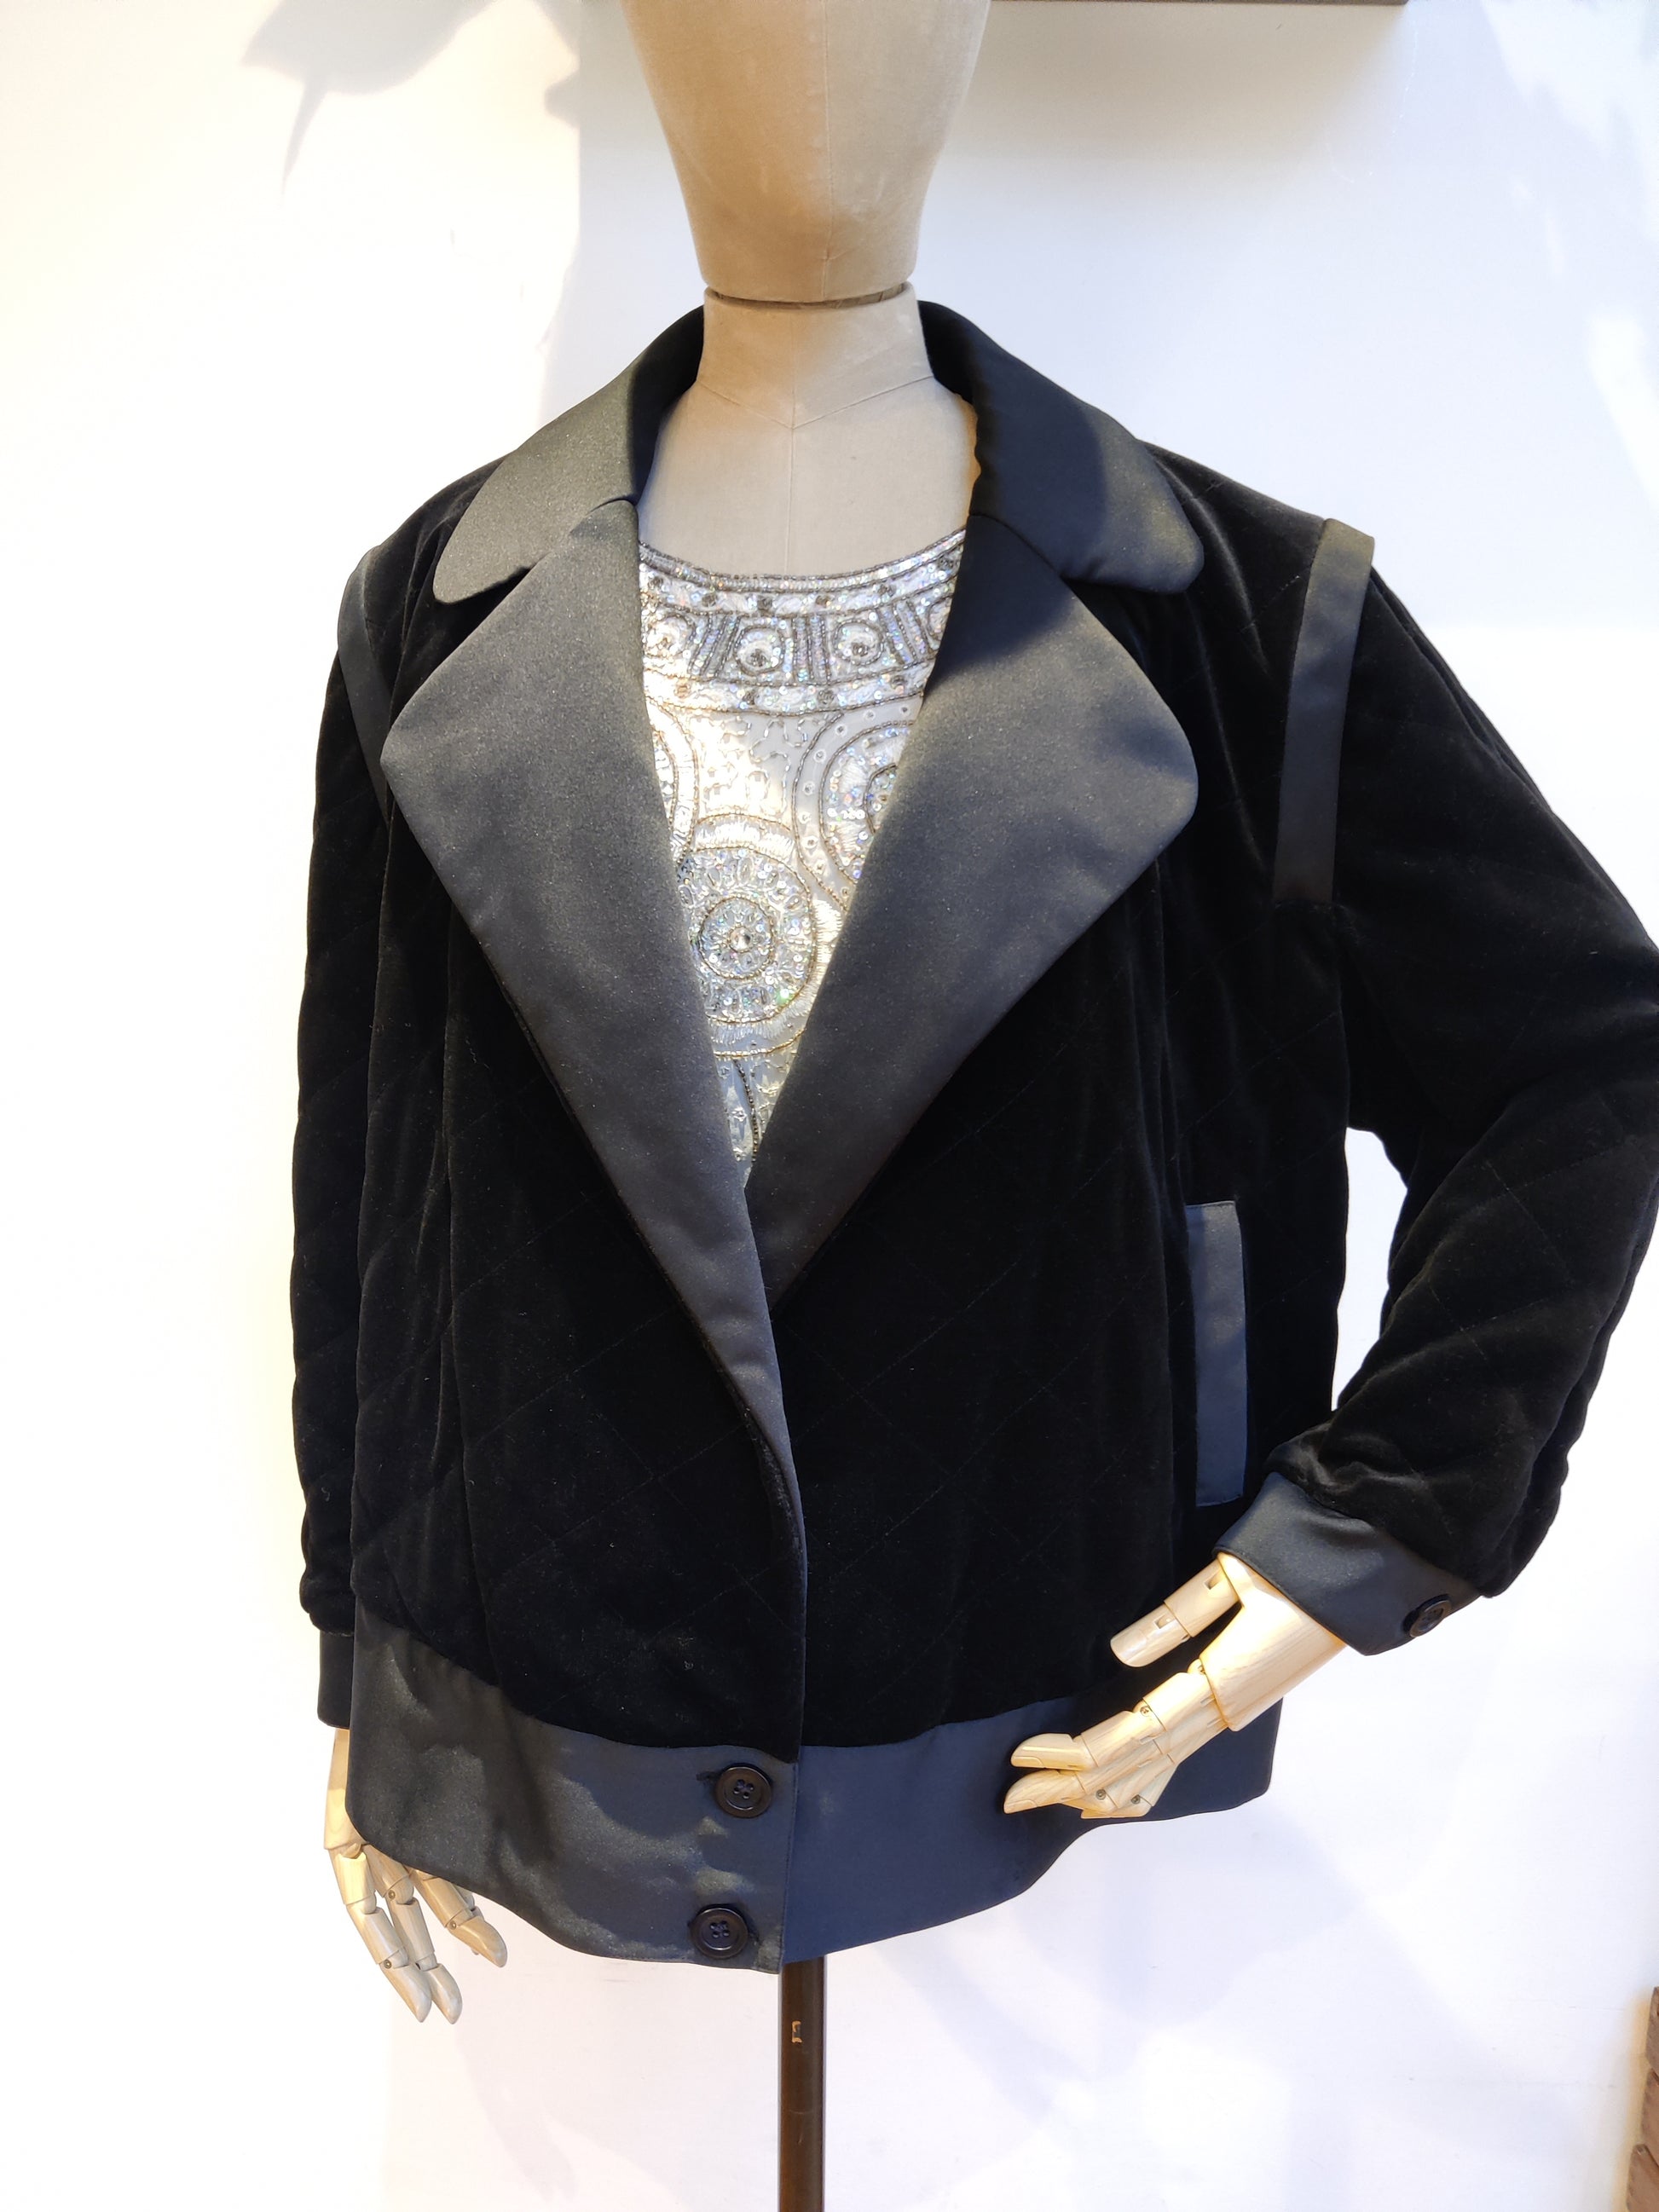 Velvet jacket with big retro collar